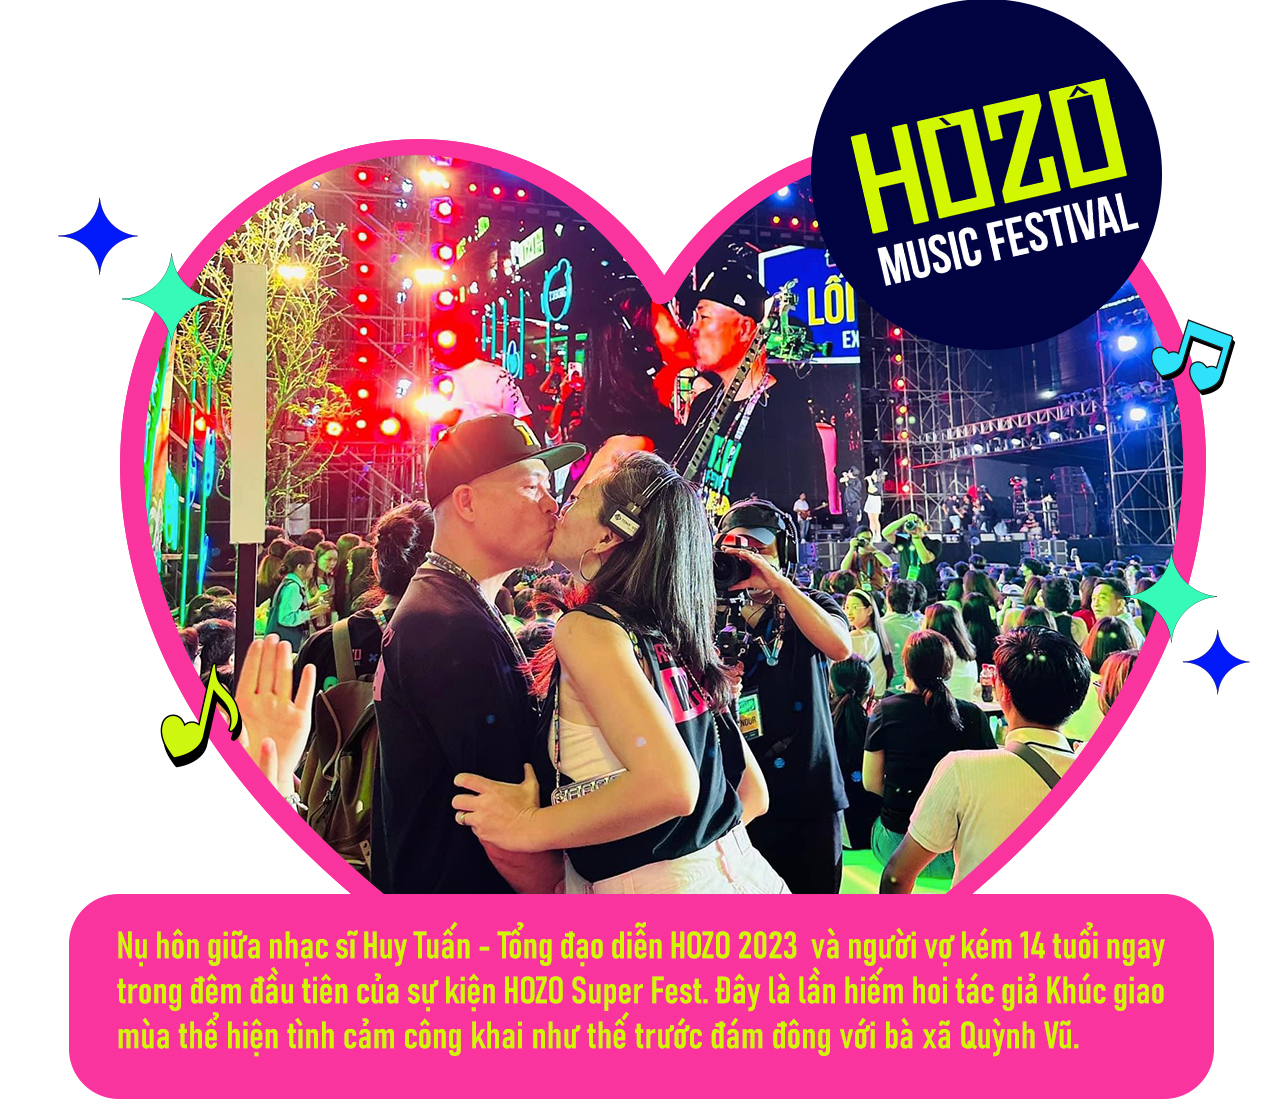 HOZO 2023 - khi âm nhạc, tình yêu và những trải nghiệm của “Hệ sinh thái lễ hội” khó quên cùng “bắt tay” chinh phục 200 nghìn khán giả - Ảnh 7.